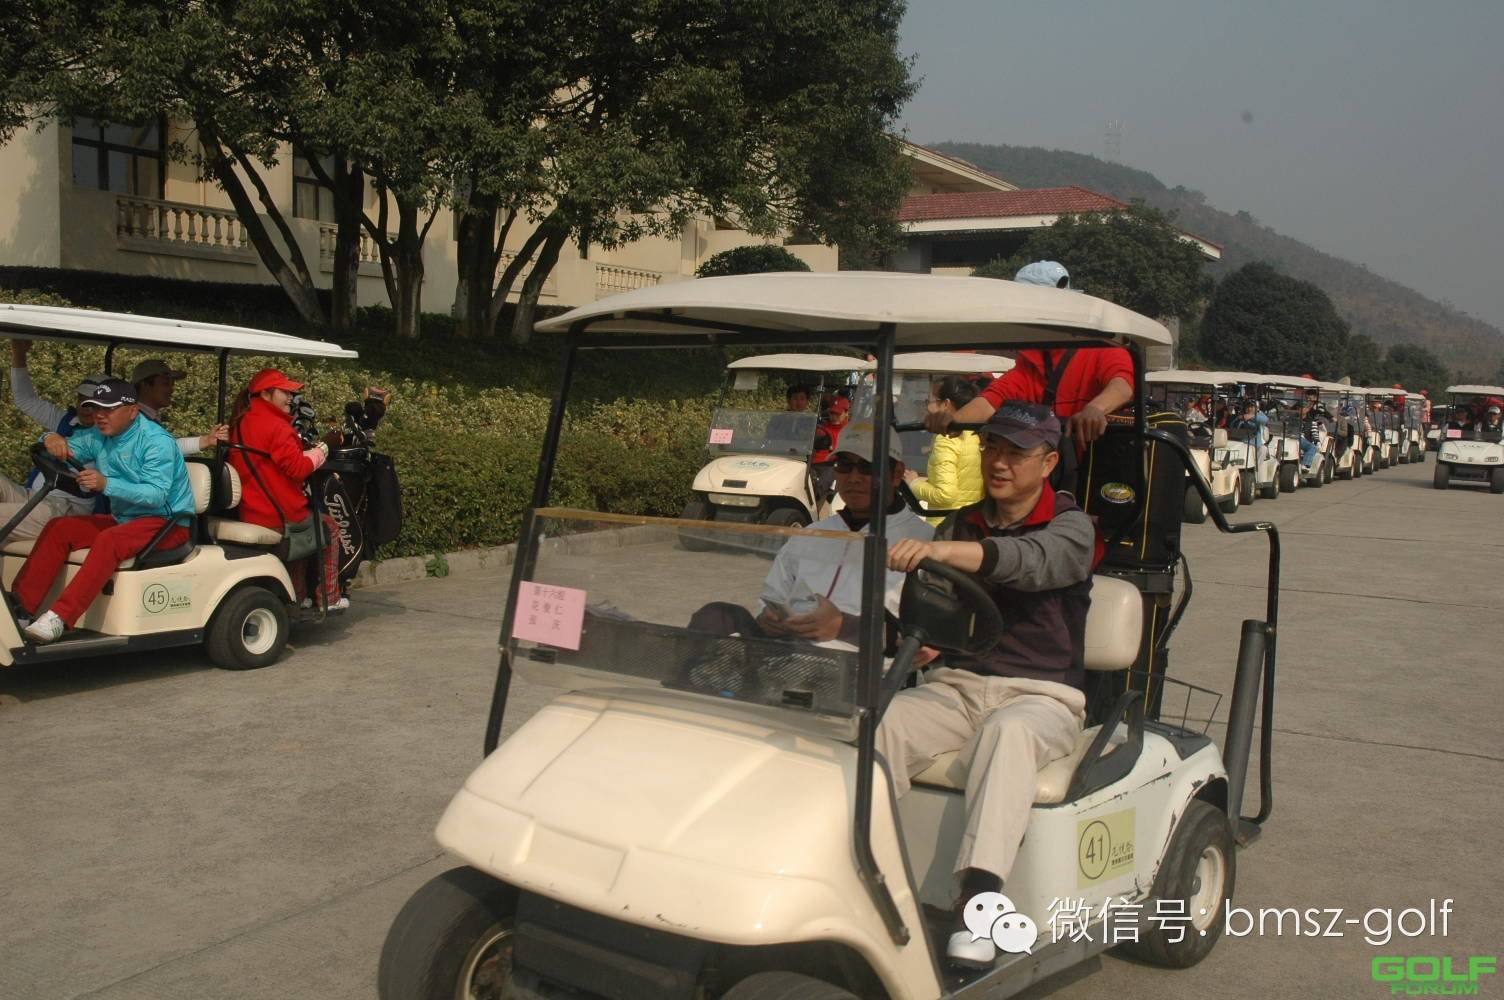 龙悦谷高尔夫2014年11月会员杯月例赛圆满结束